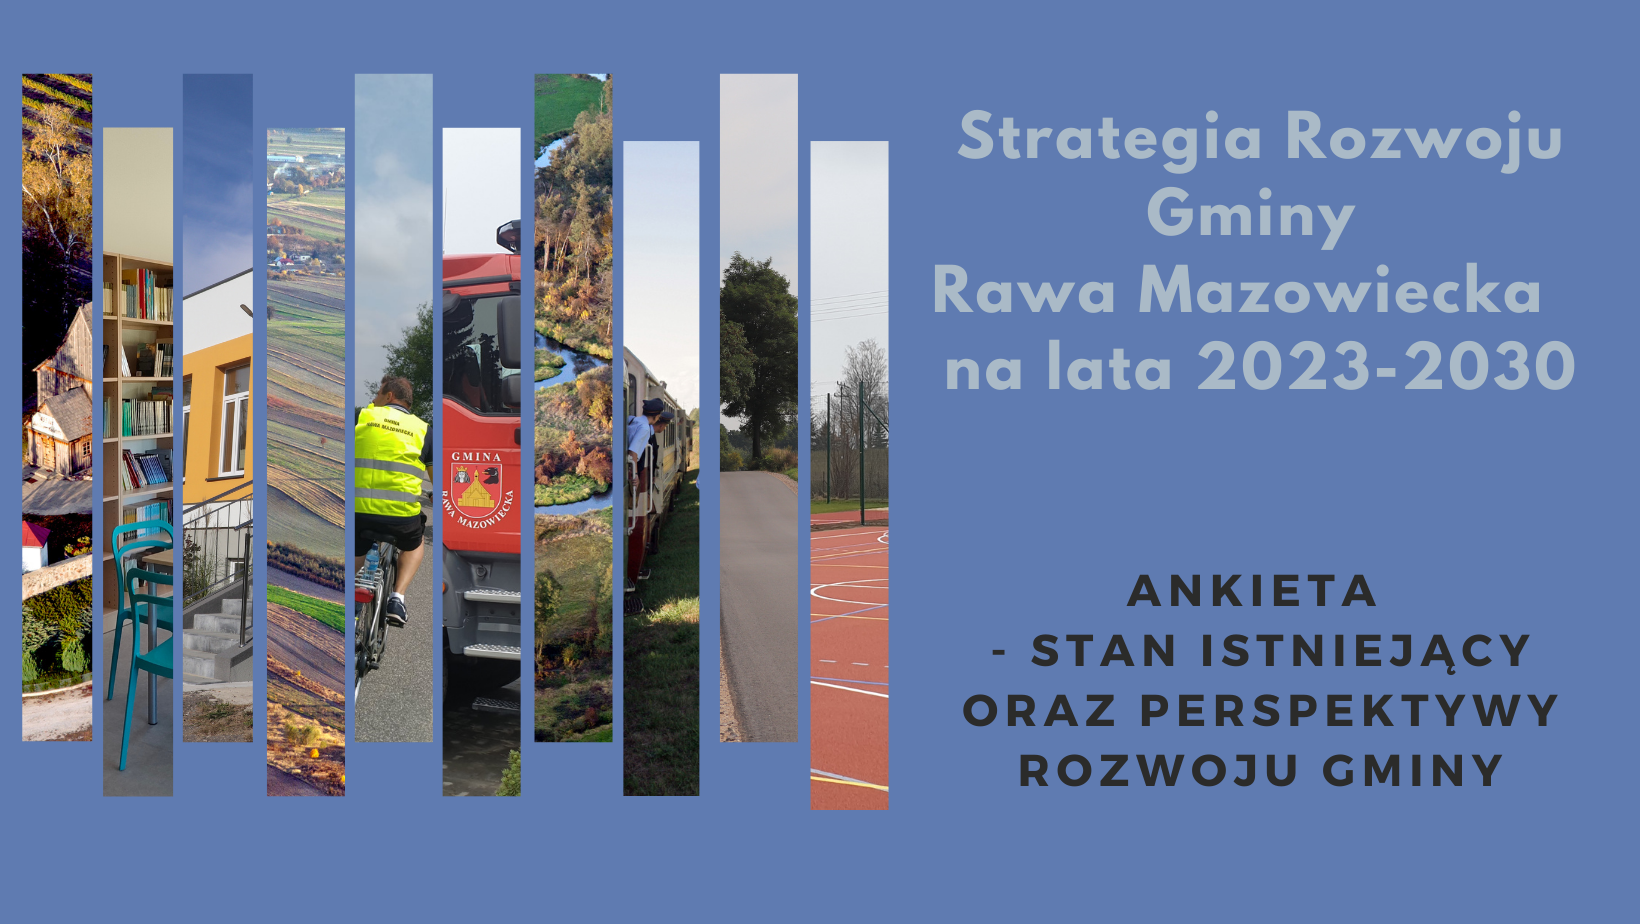 Ruszyły prace nad budową Strategii Rozwoju Gminy Rawa Mazowiecka do roku 2030